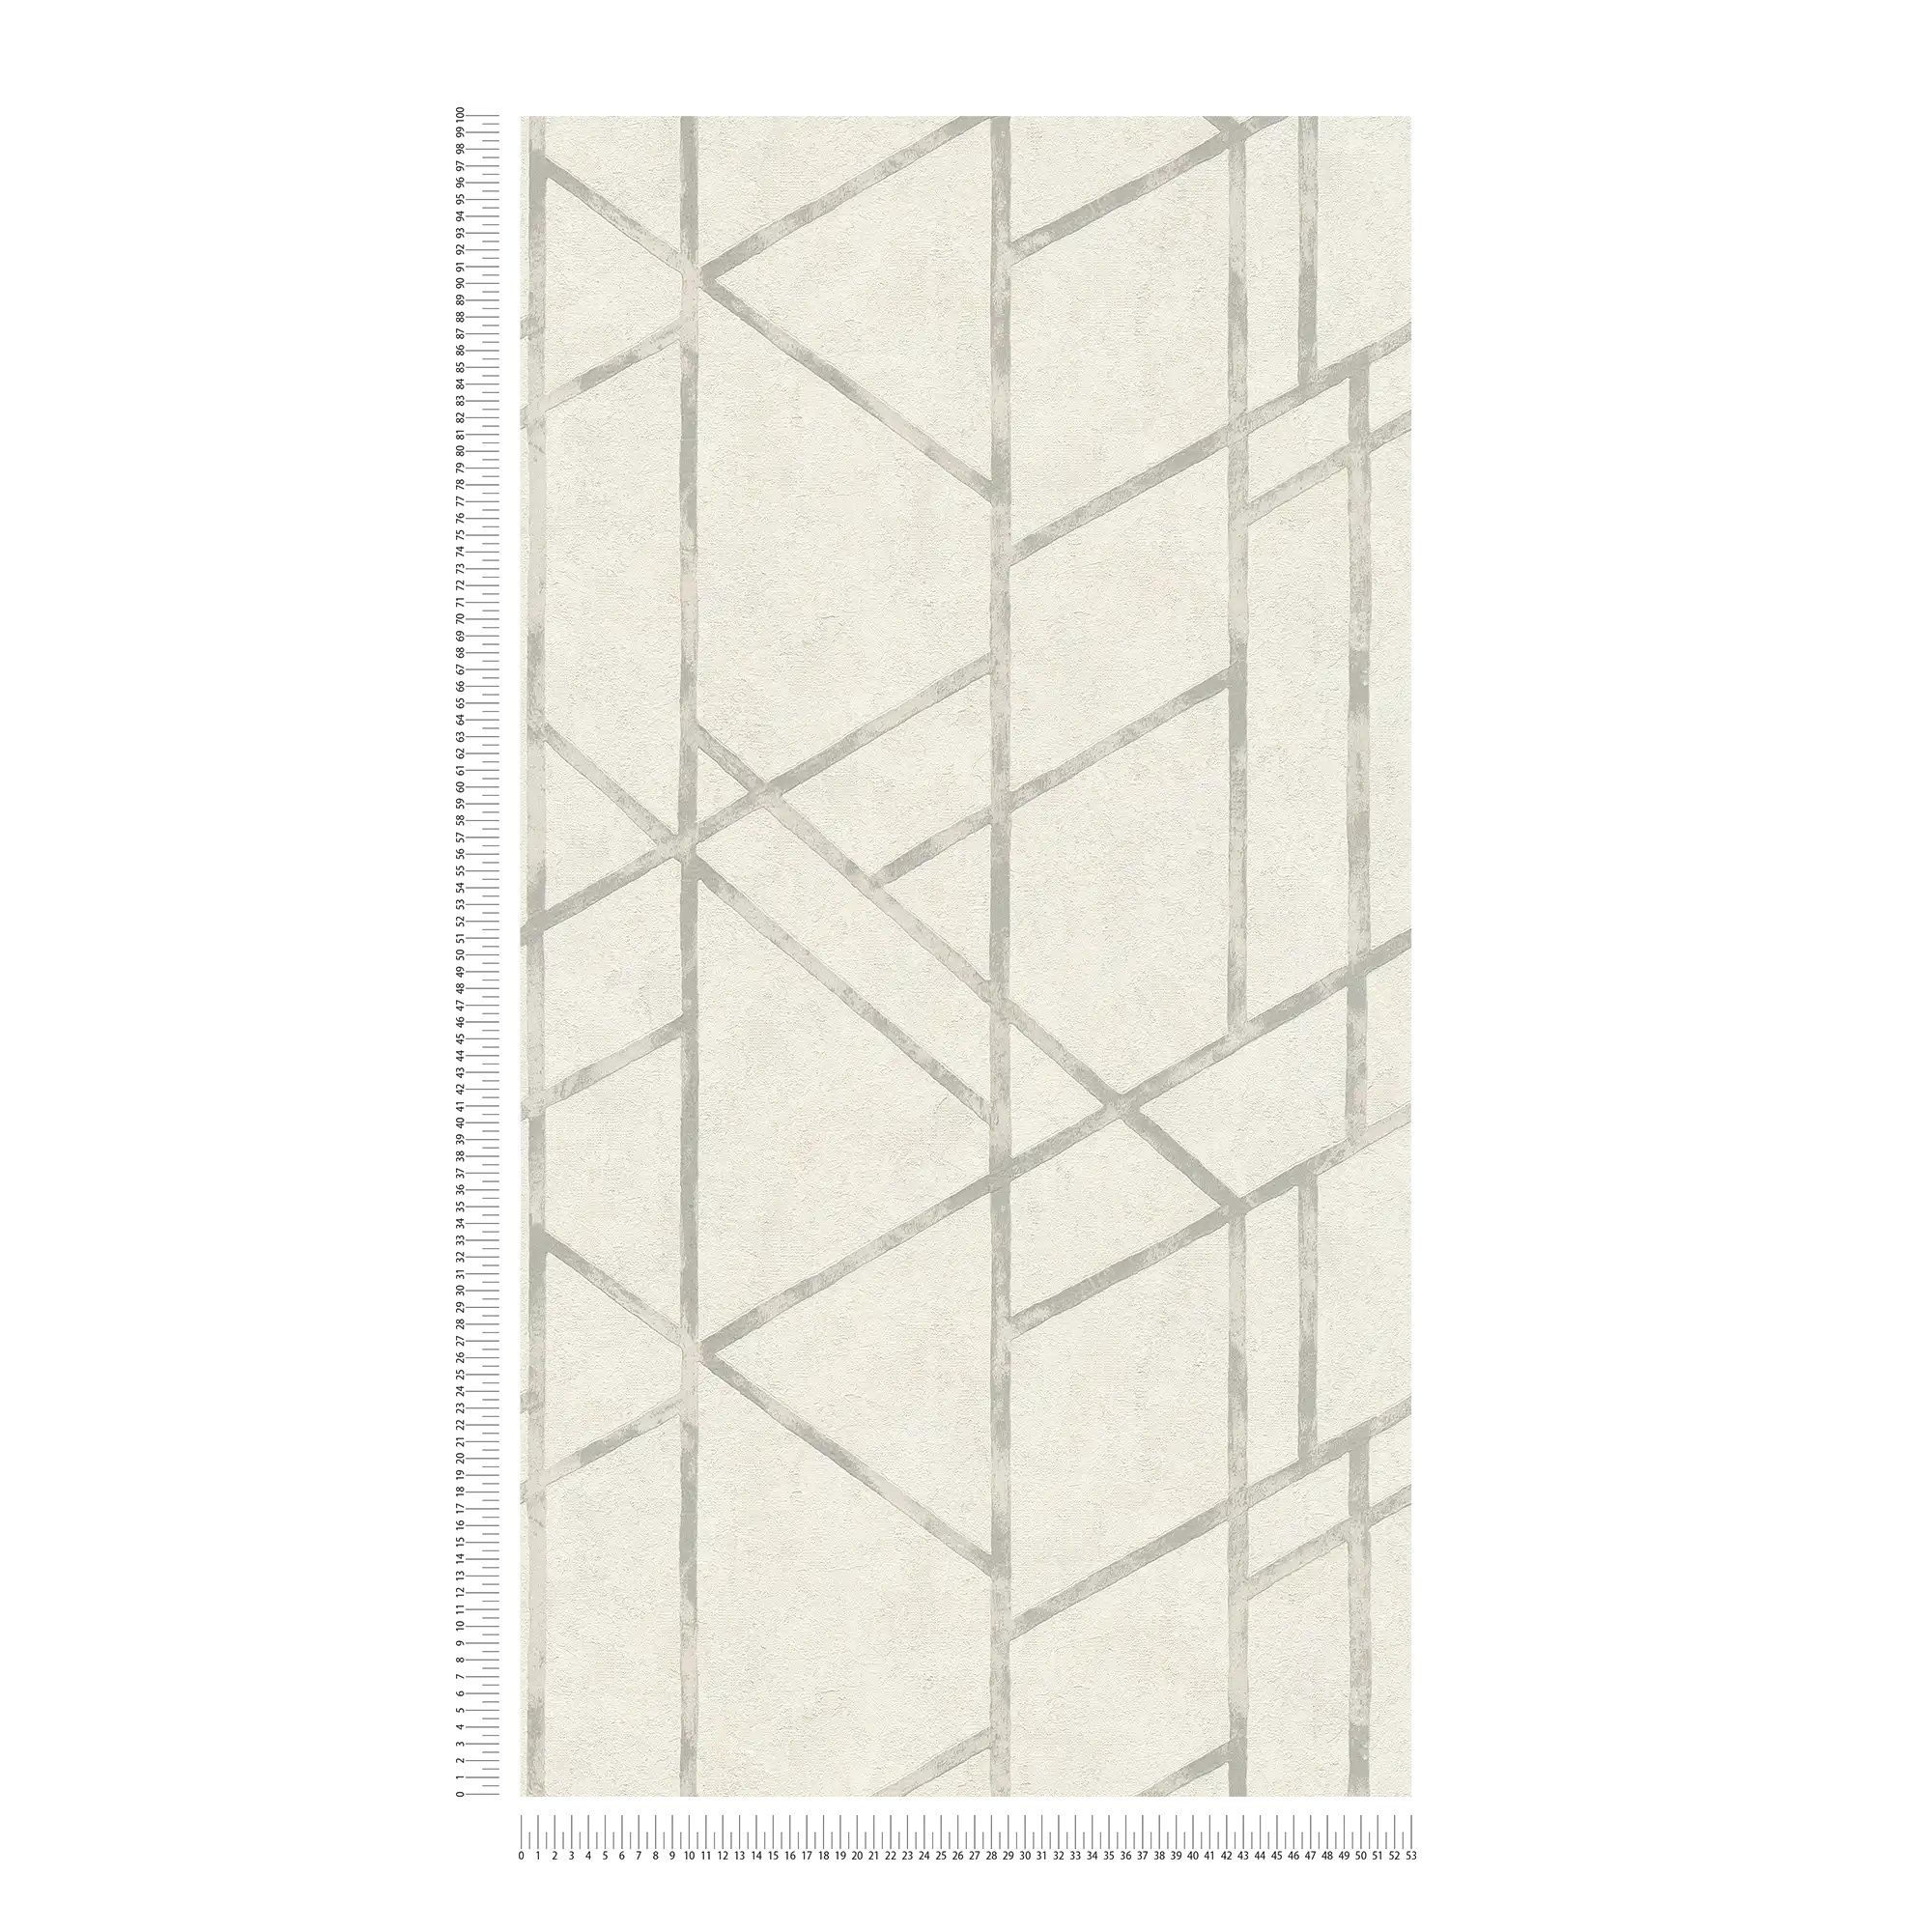             Betonbehang met zilver grafisch patroon - zilver, wit
        